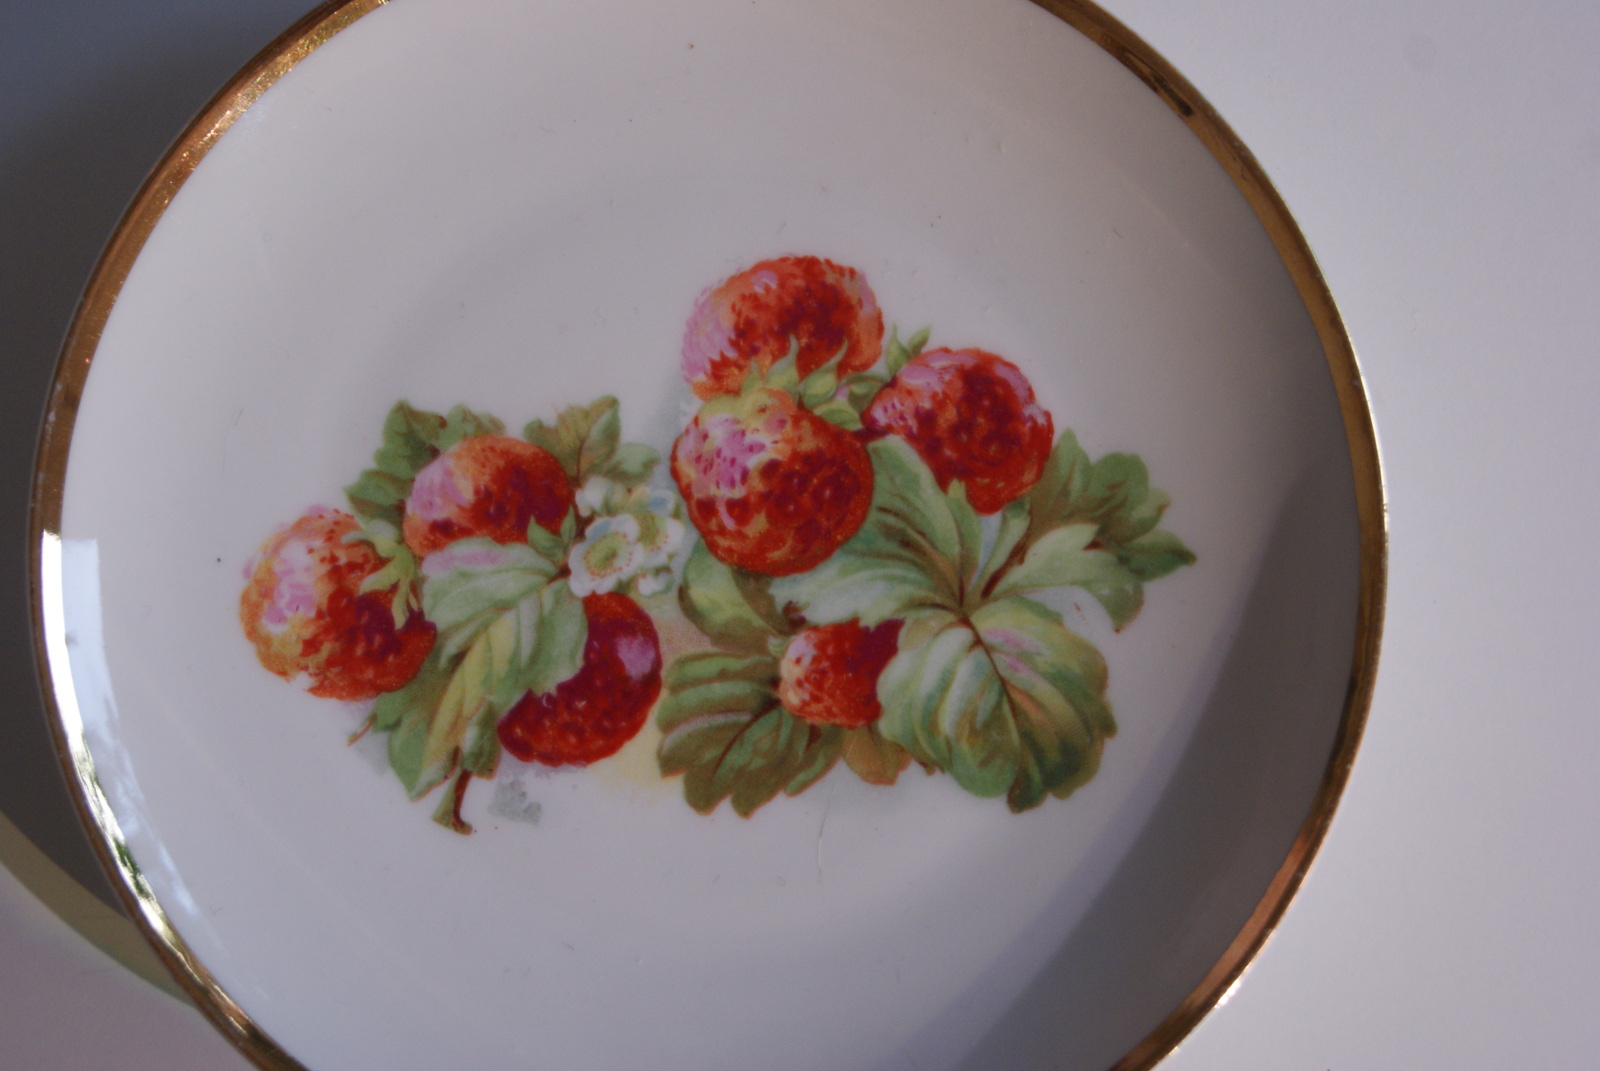 Waldenburg - Altwasser plate with strawberries 1929